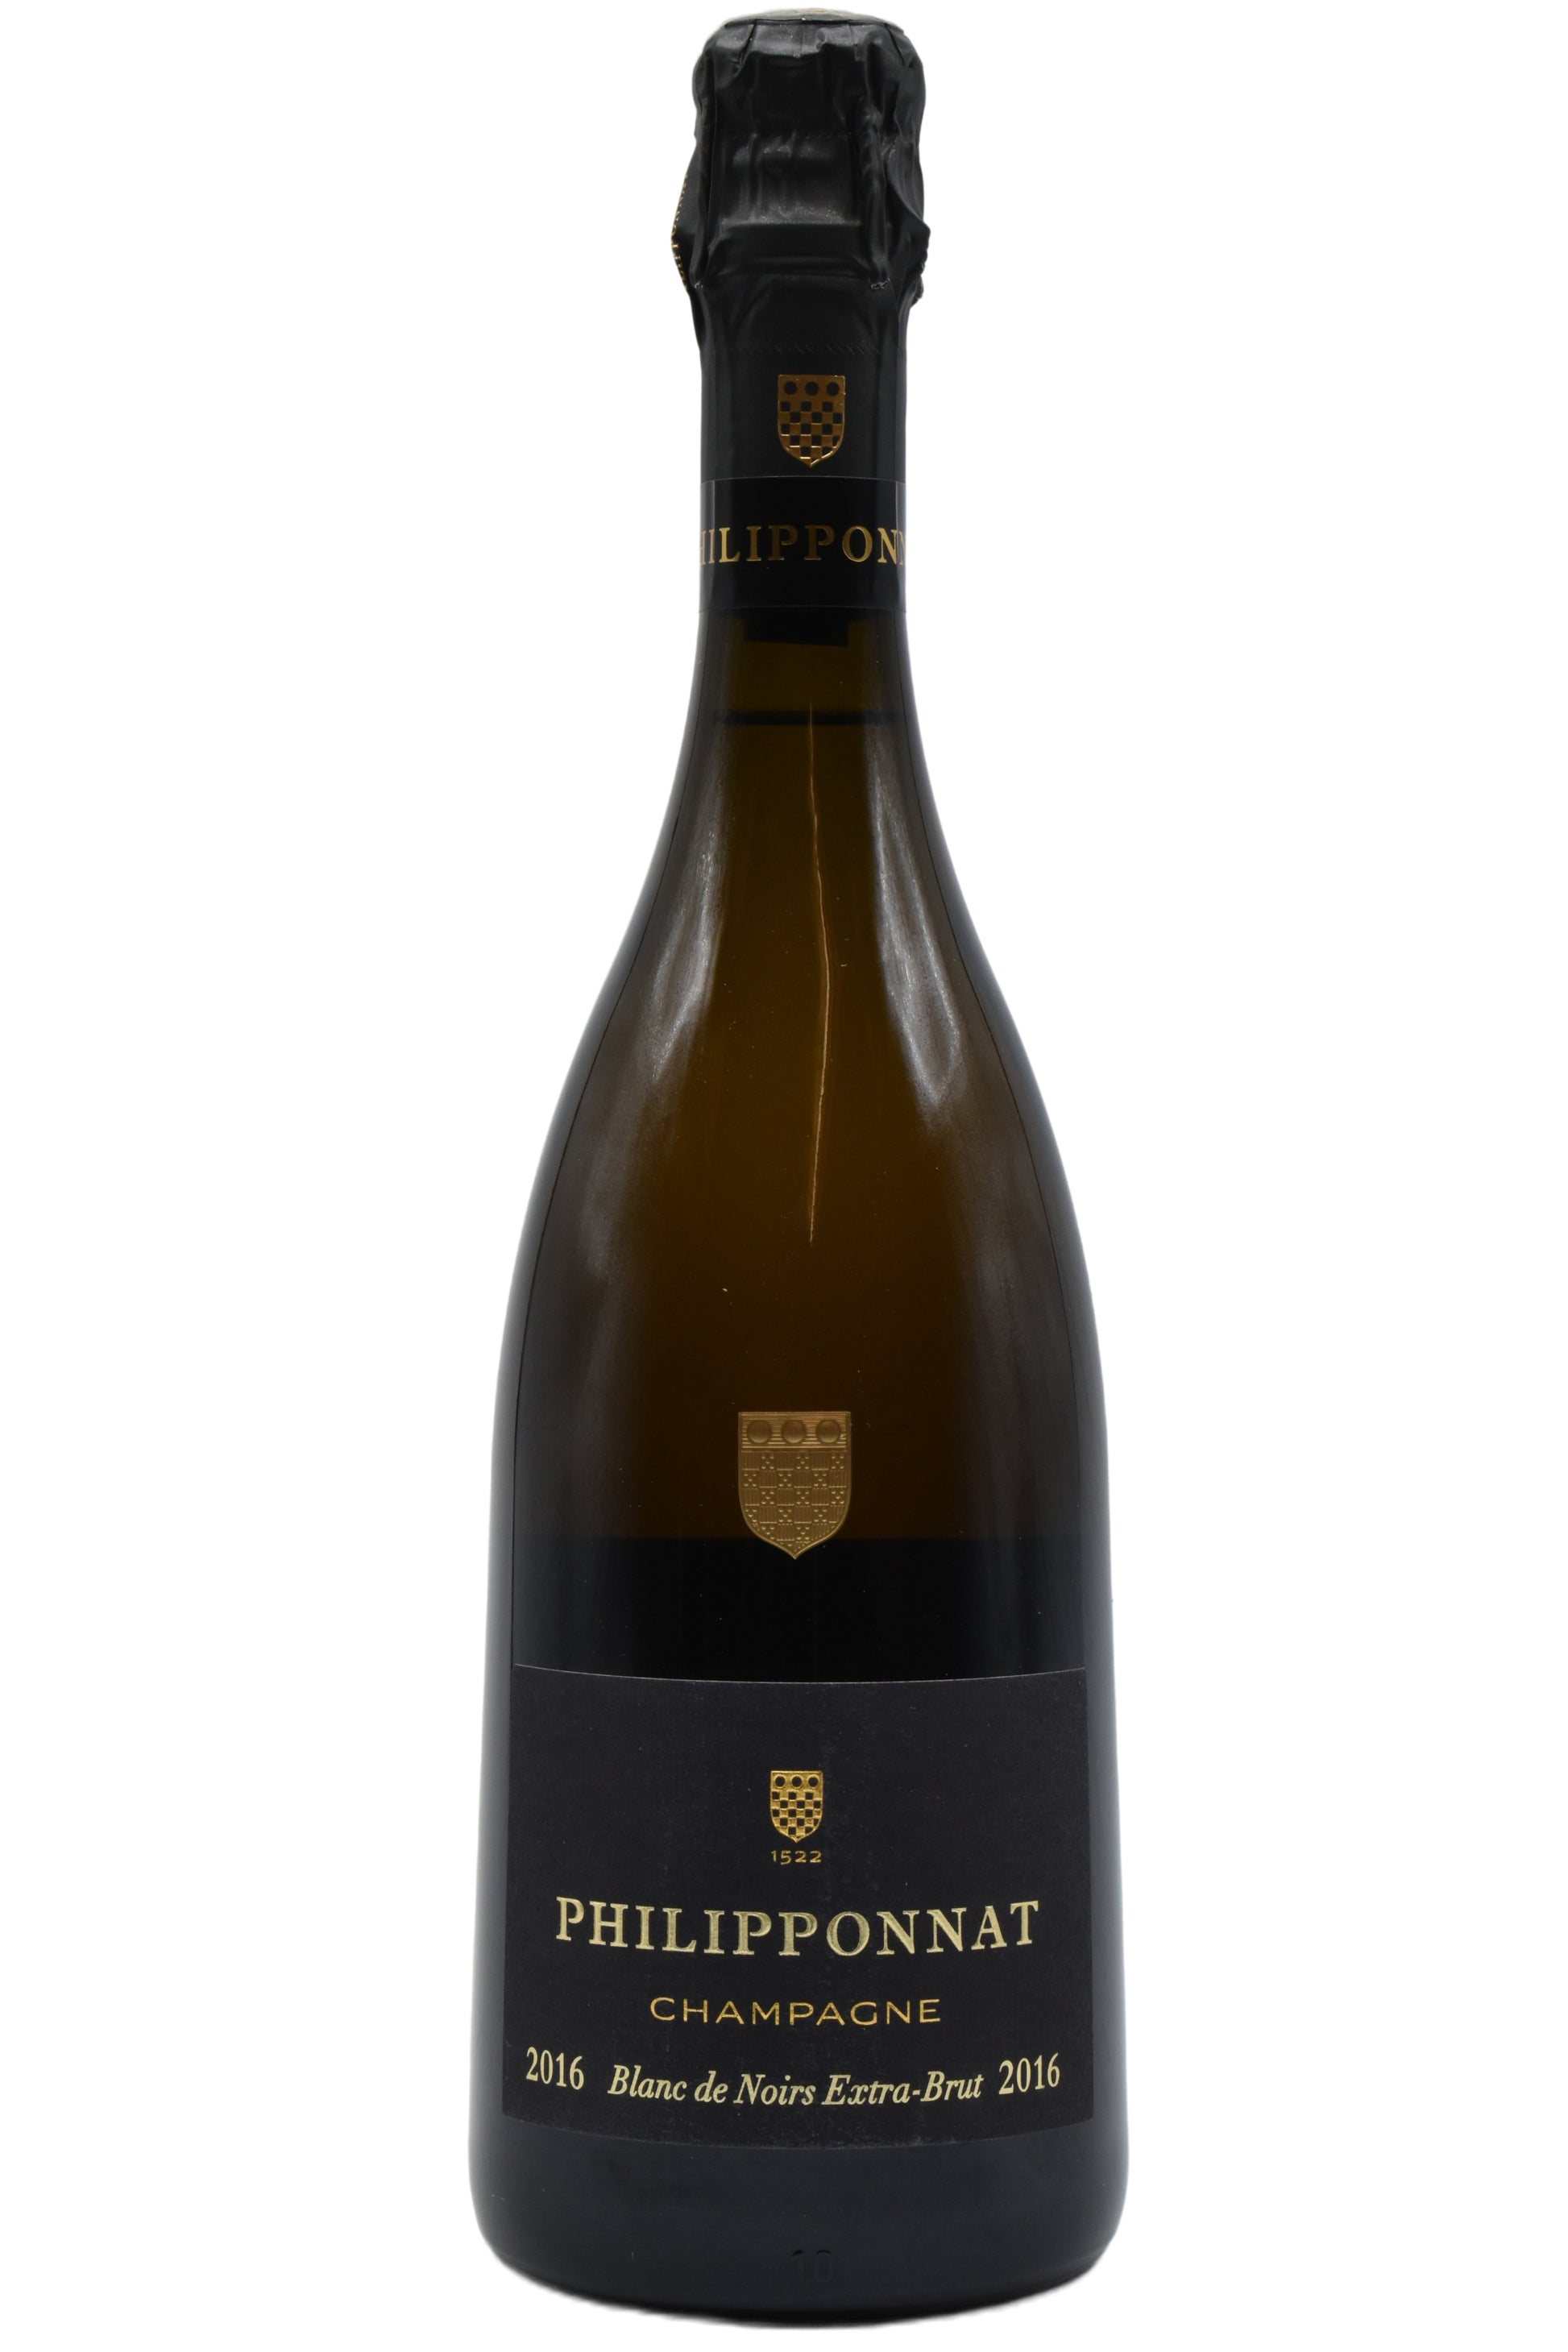 2016 Philipponnat, Champagne Blanc de Noirs 750ml - Walker Wine Co.